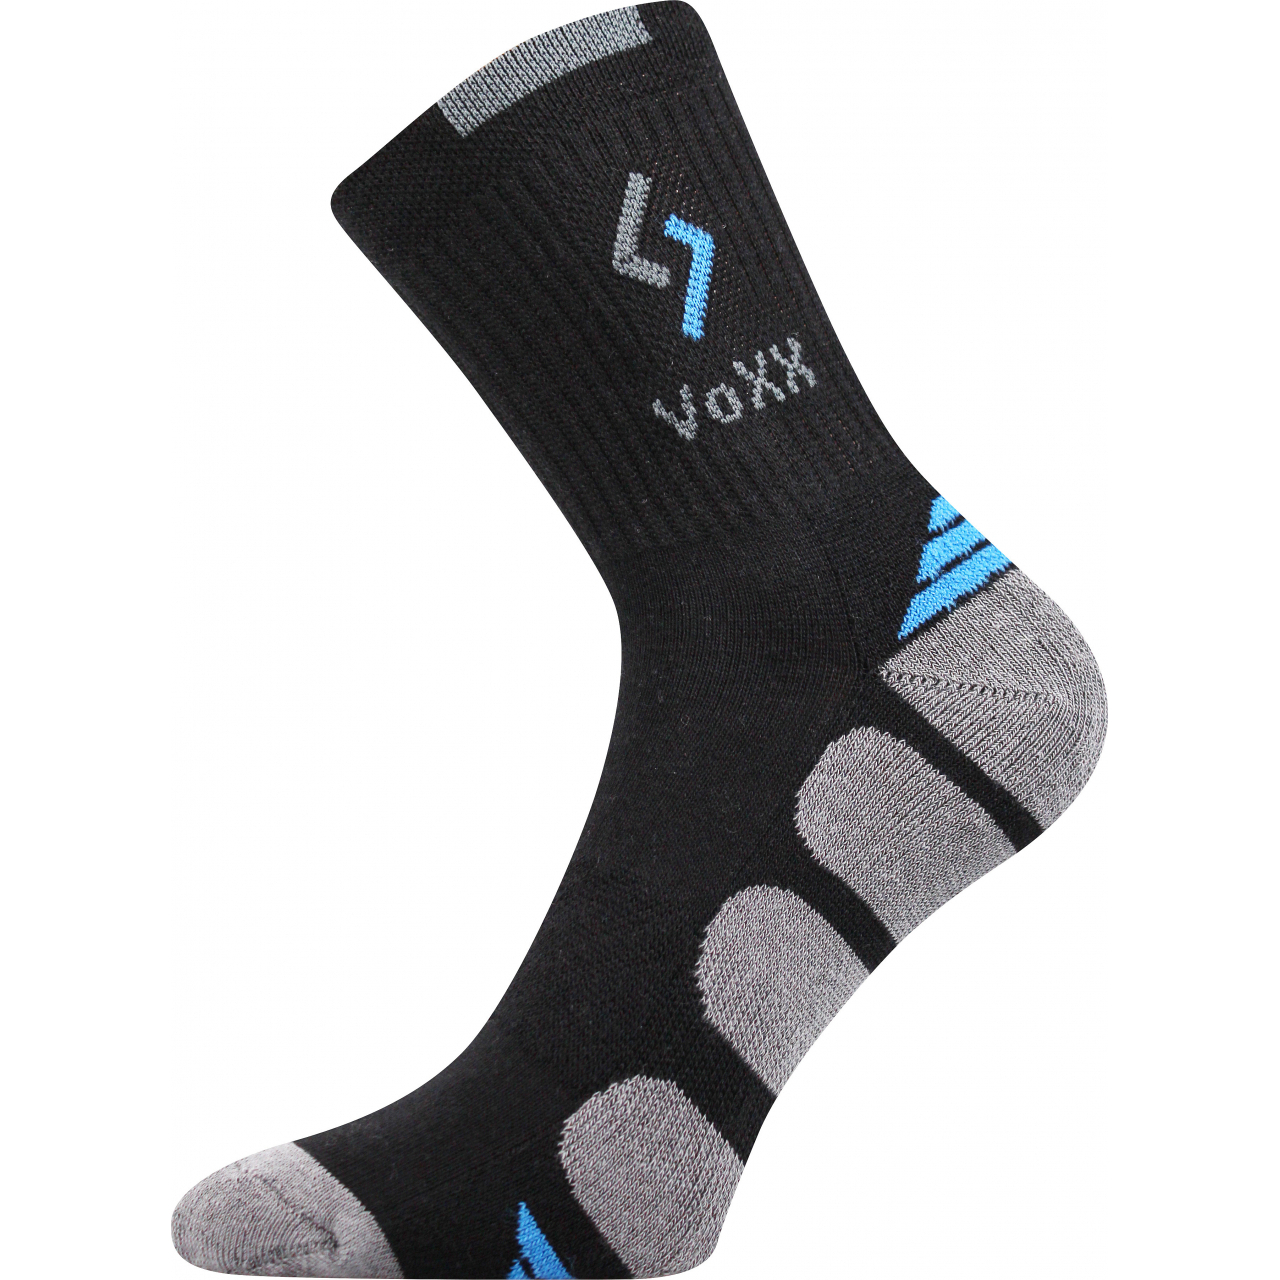 Ponožky sportovní Voxx Tronic - černé-šedé, 43-46